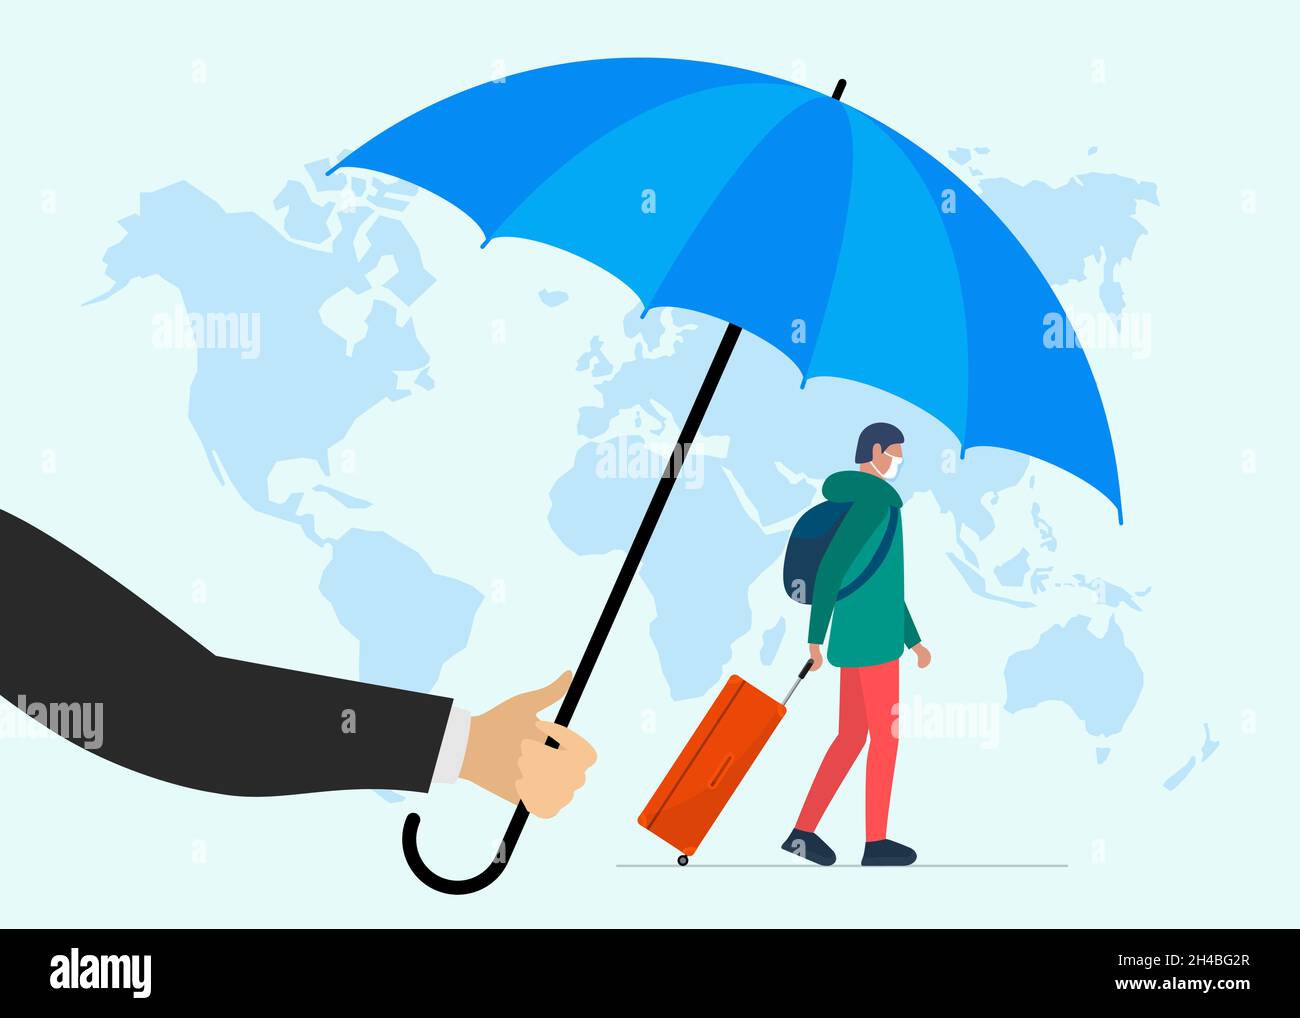 Reiseversicherungs-Konzept. Agent hält einen Regenschirm über dem Reisenden Mann mit einem Gepäckkoffer in einer Schutzmaske auf dem Hintergrund der Weltkarte. Sicherheitsweg Vektor eps Illustration Banner Stock Vektor